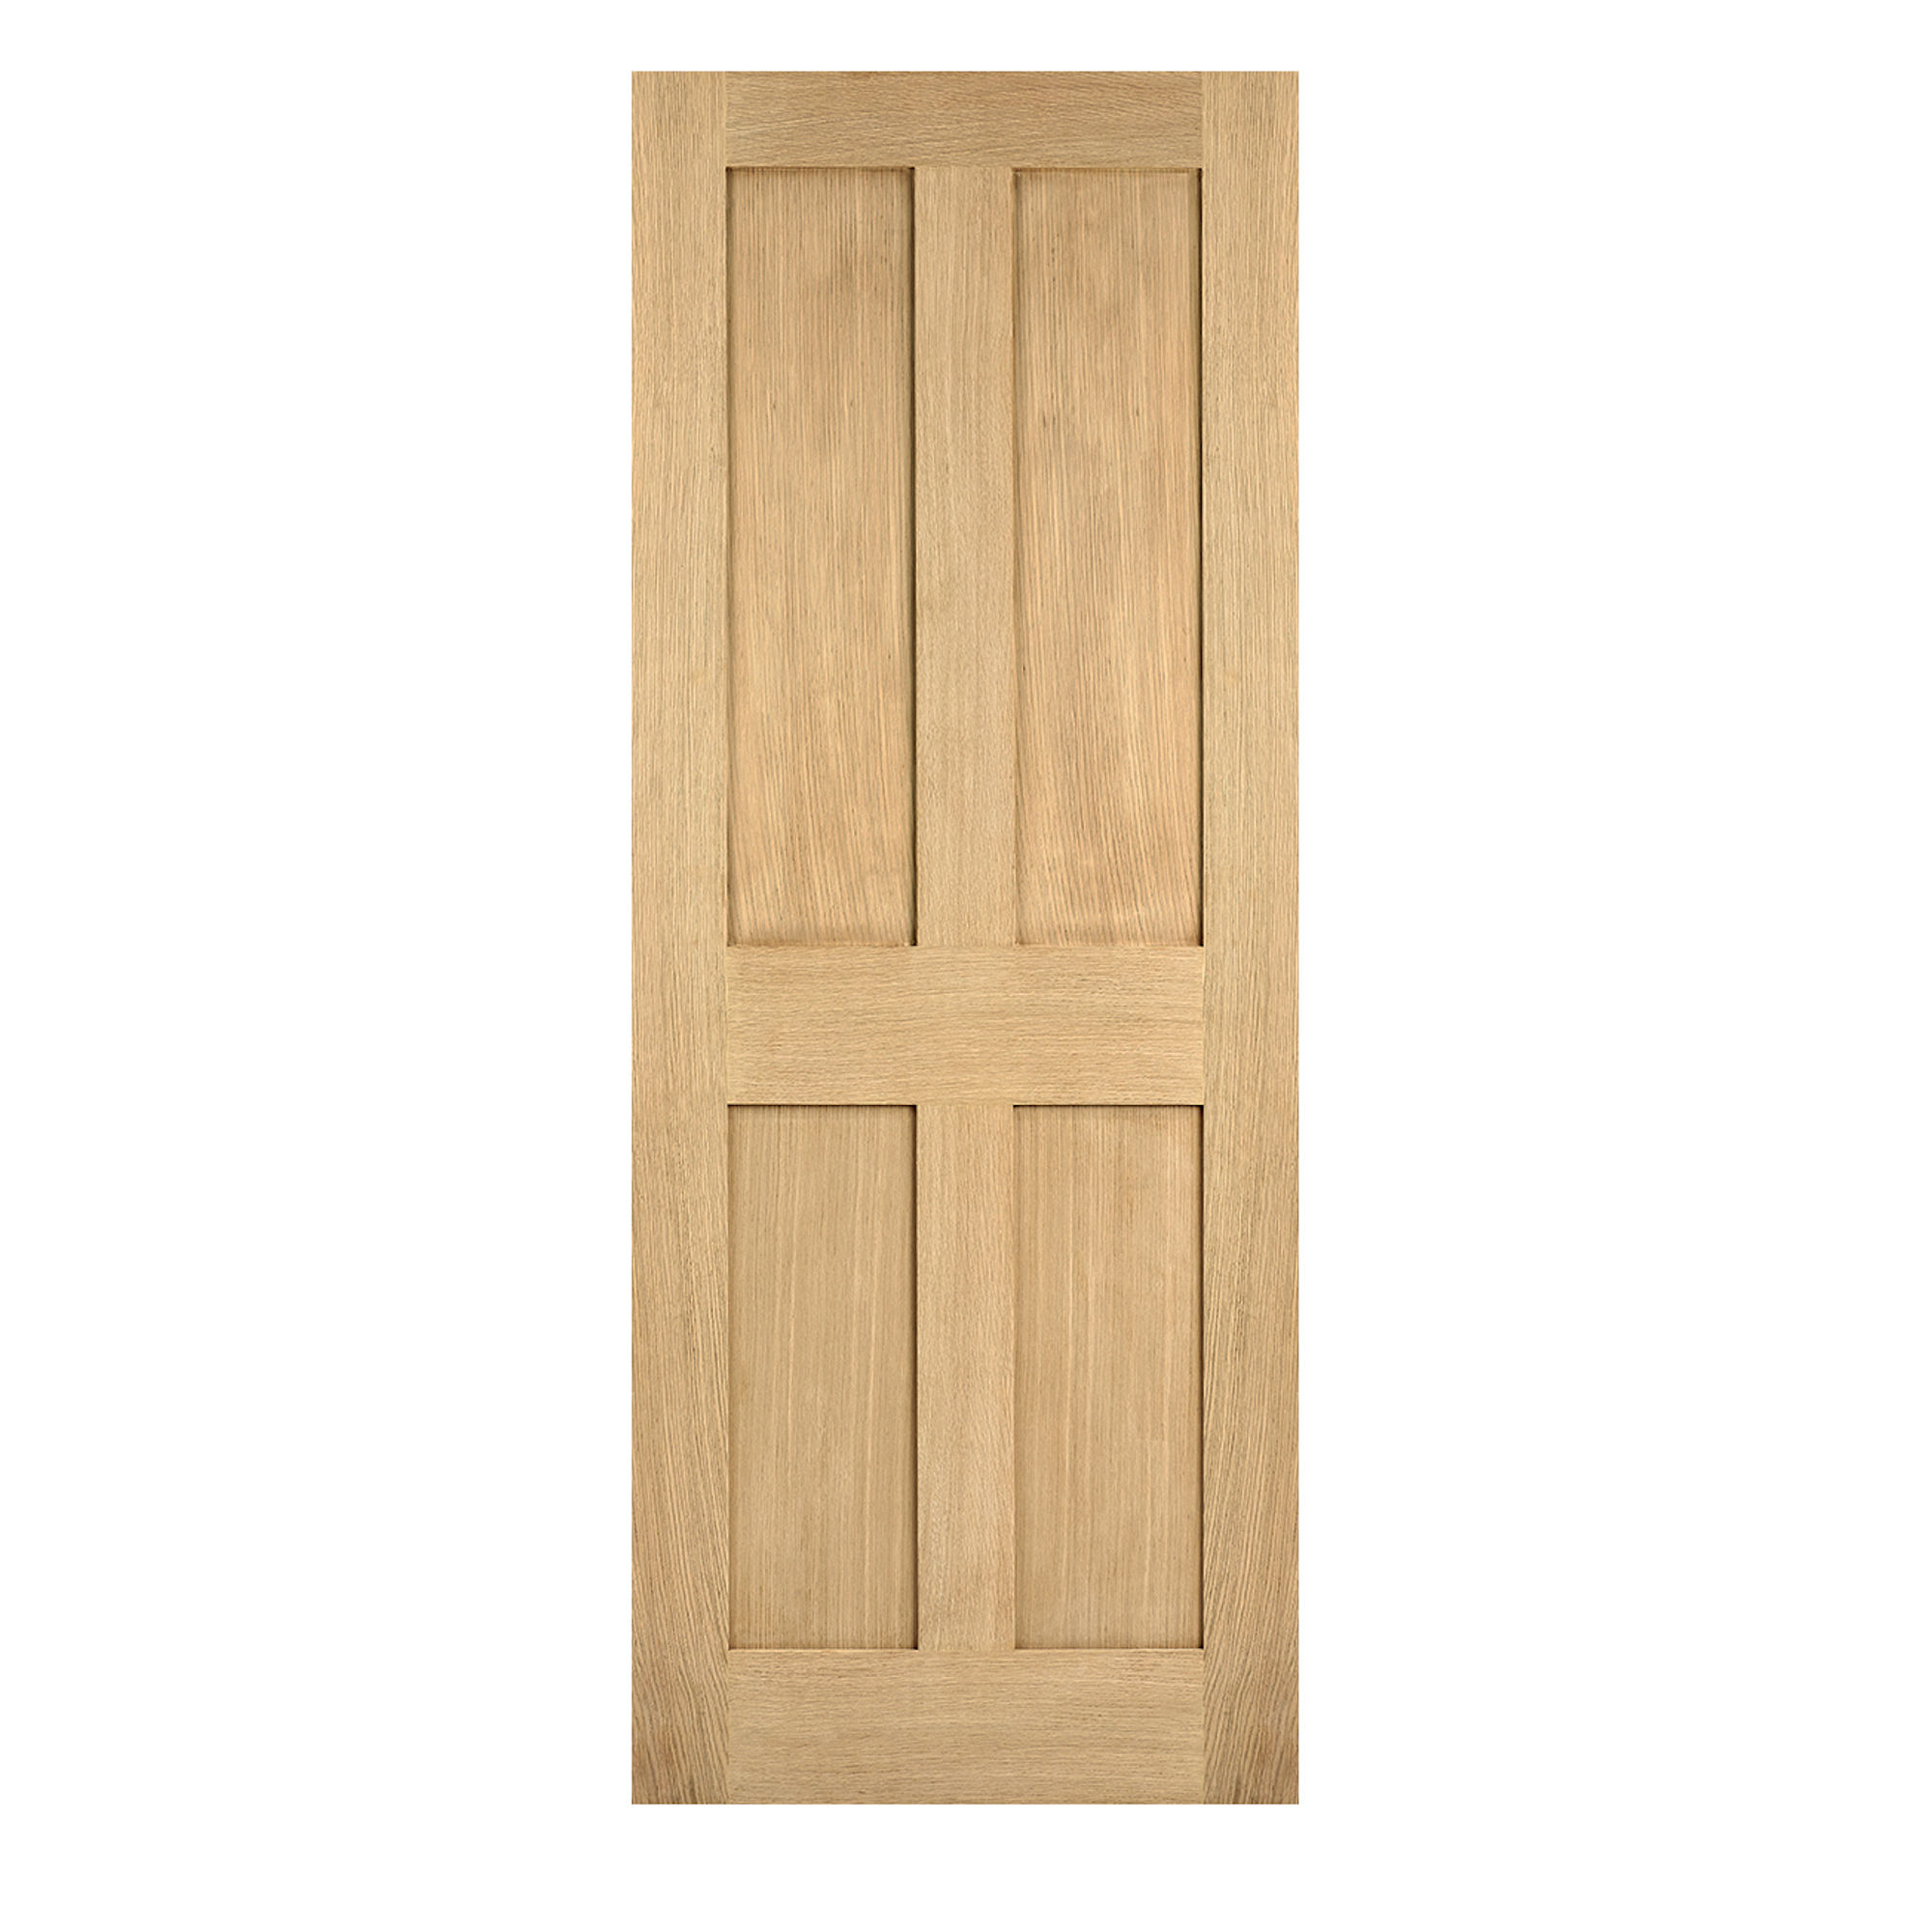 London 4-Panel Unfinished Internal Door Oak 610mm x 1981mm - OLON24